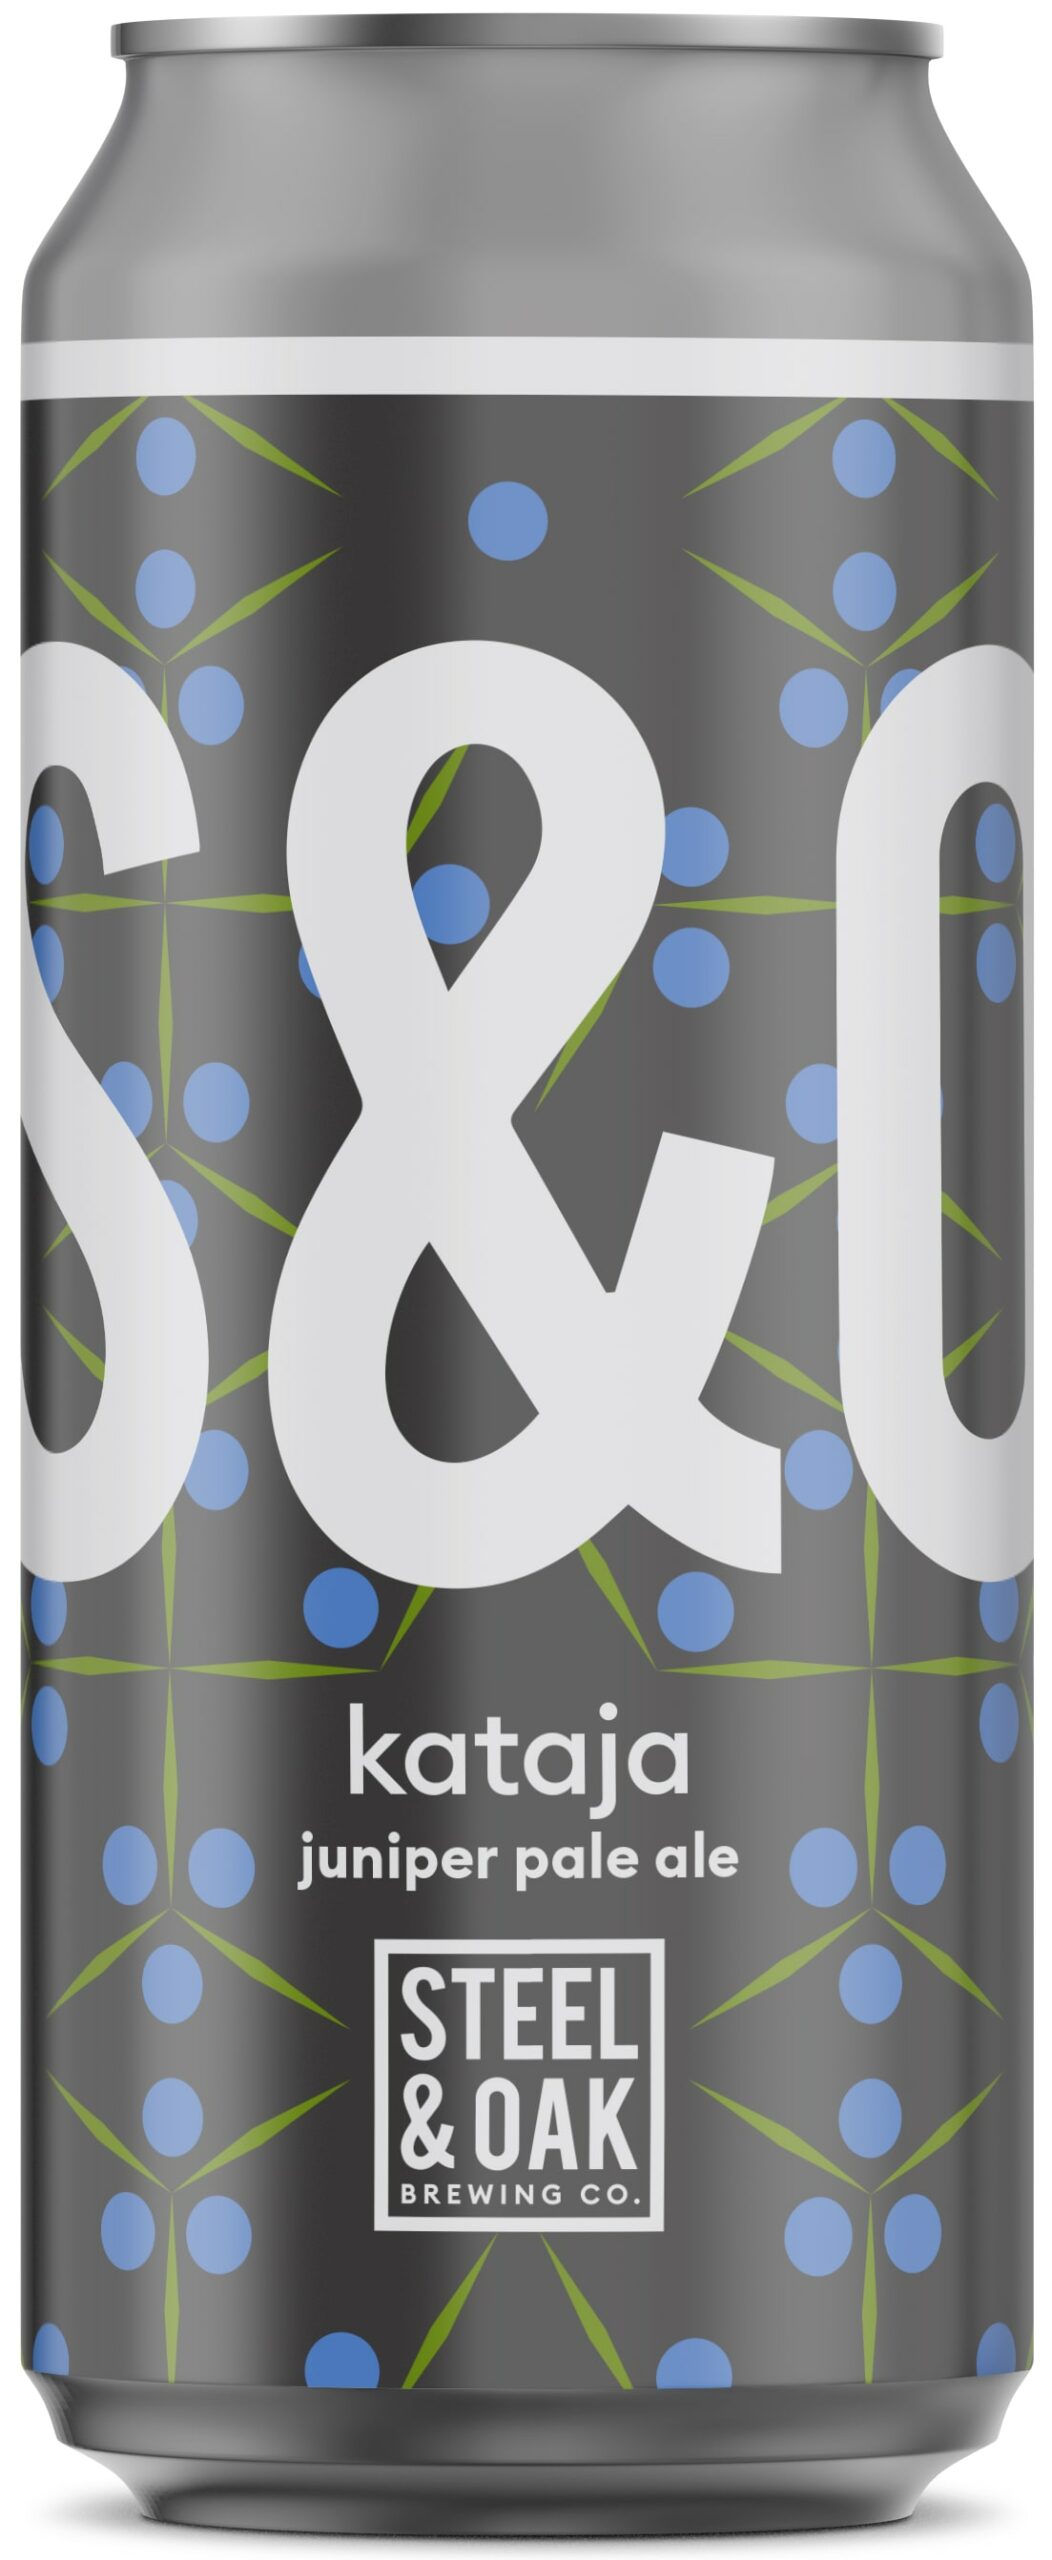 STO23-001-Kataja-Label-FA